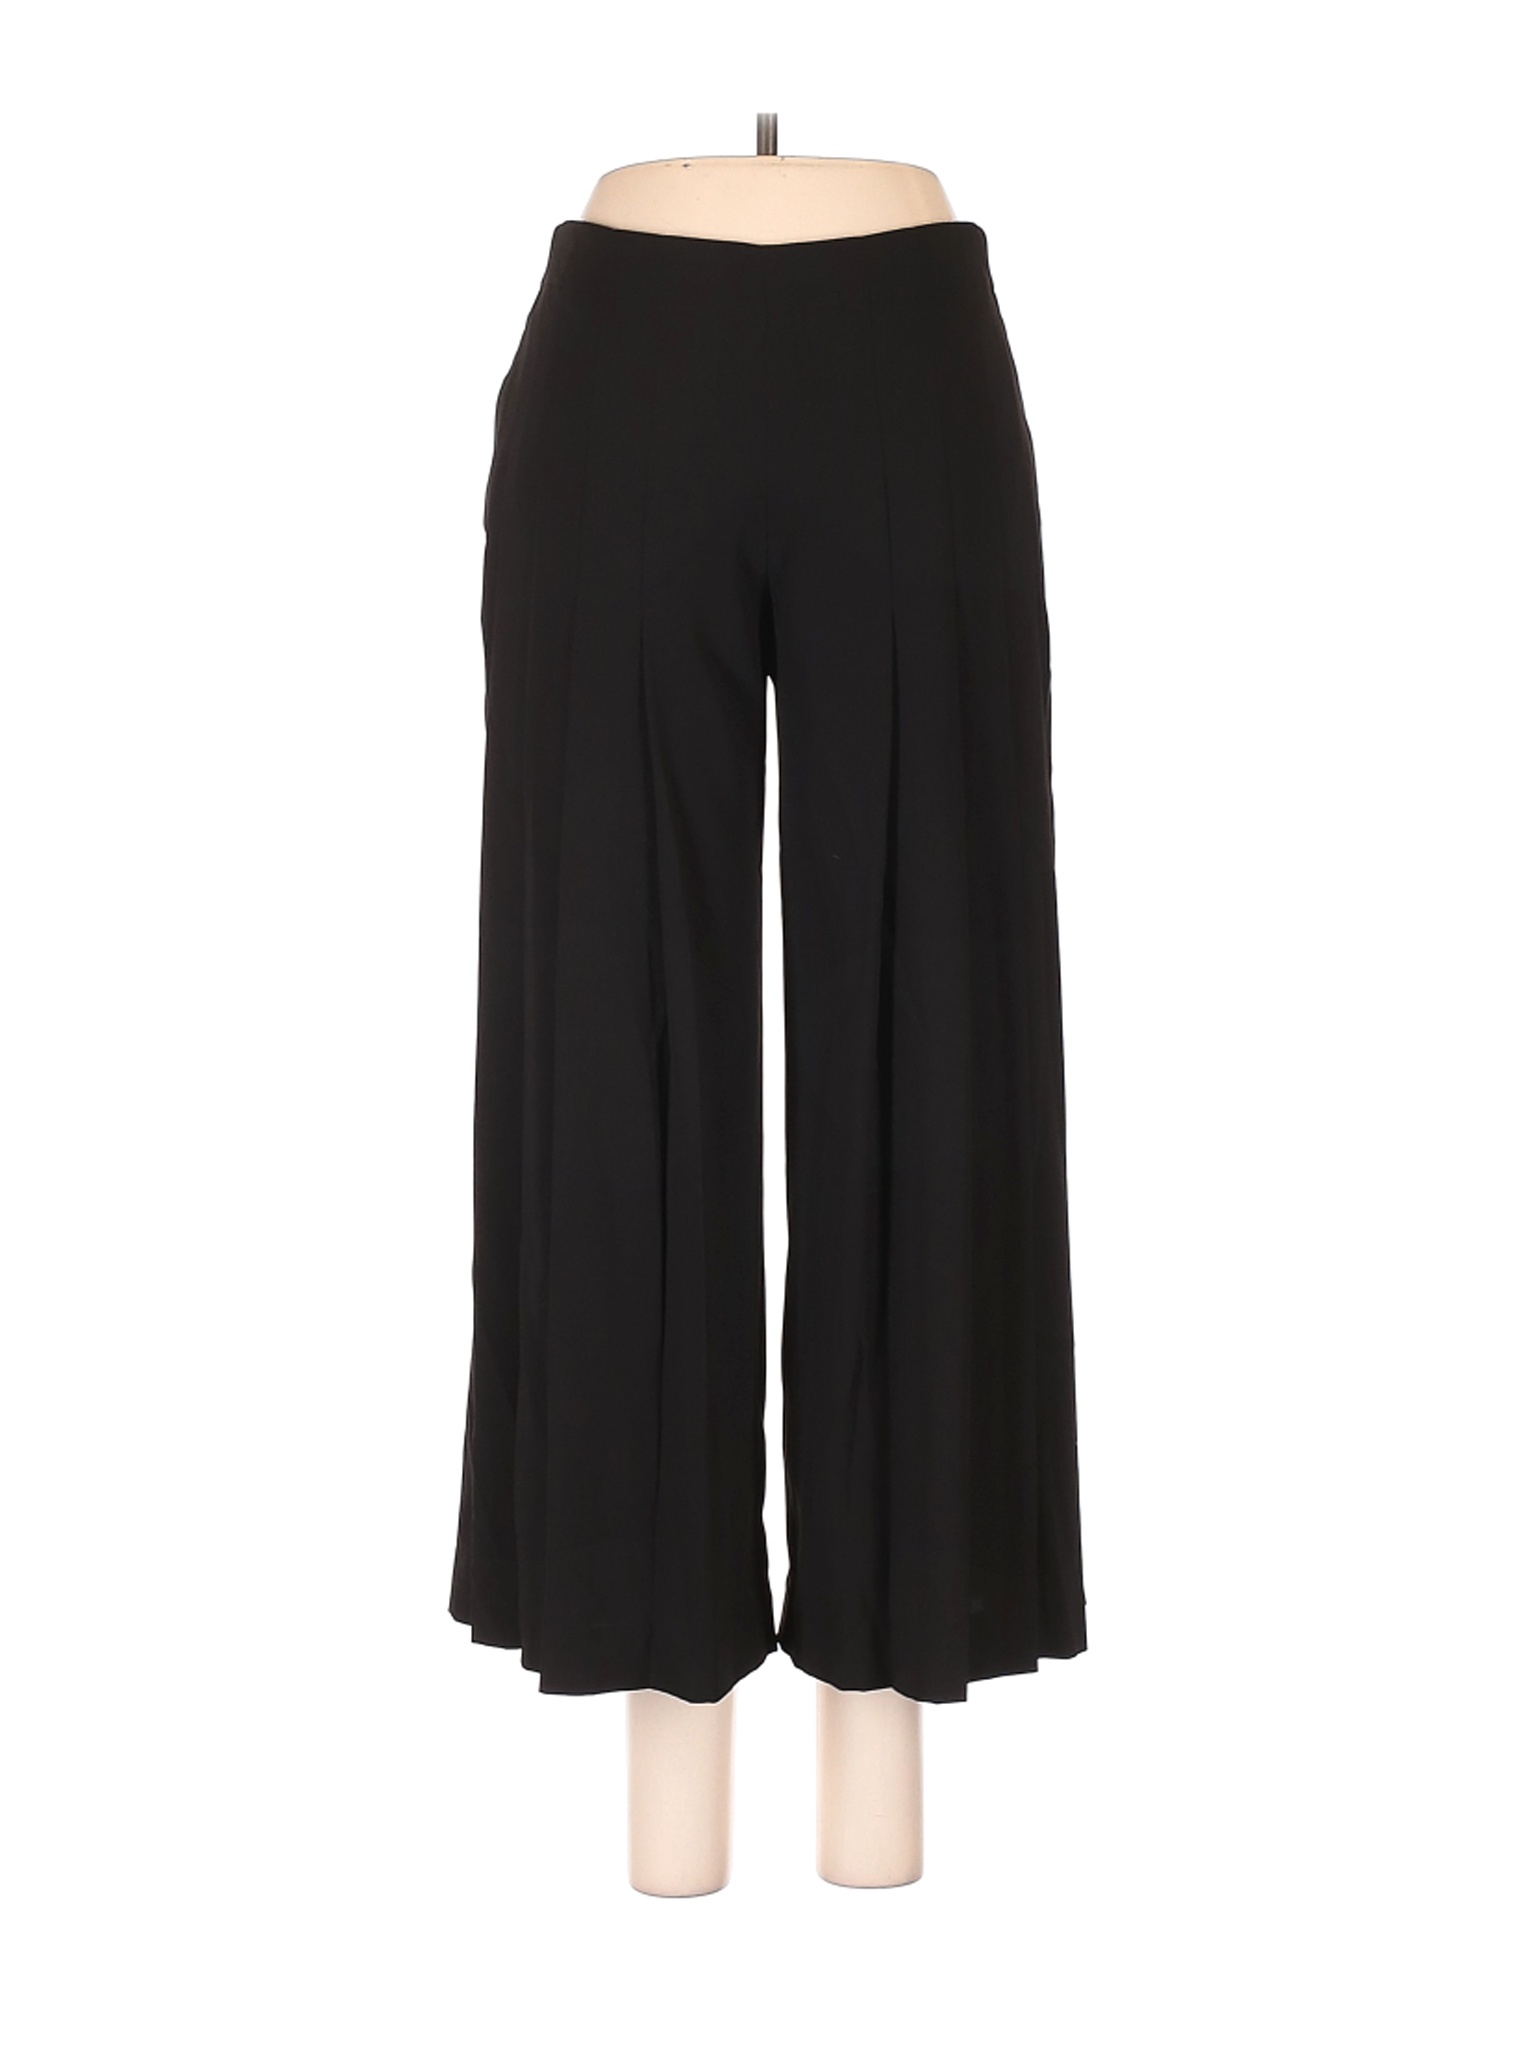 Simply Vera Vera Wang Women Black Casual Pants XS | eBay